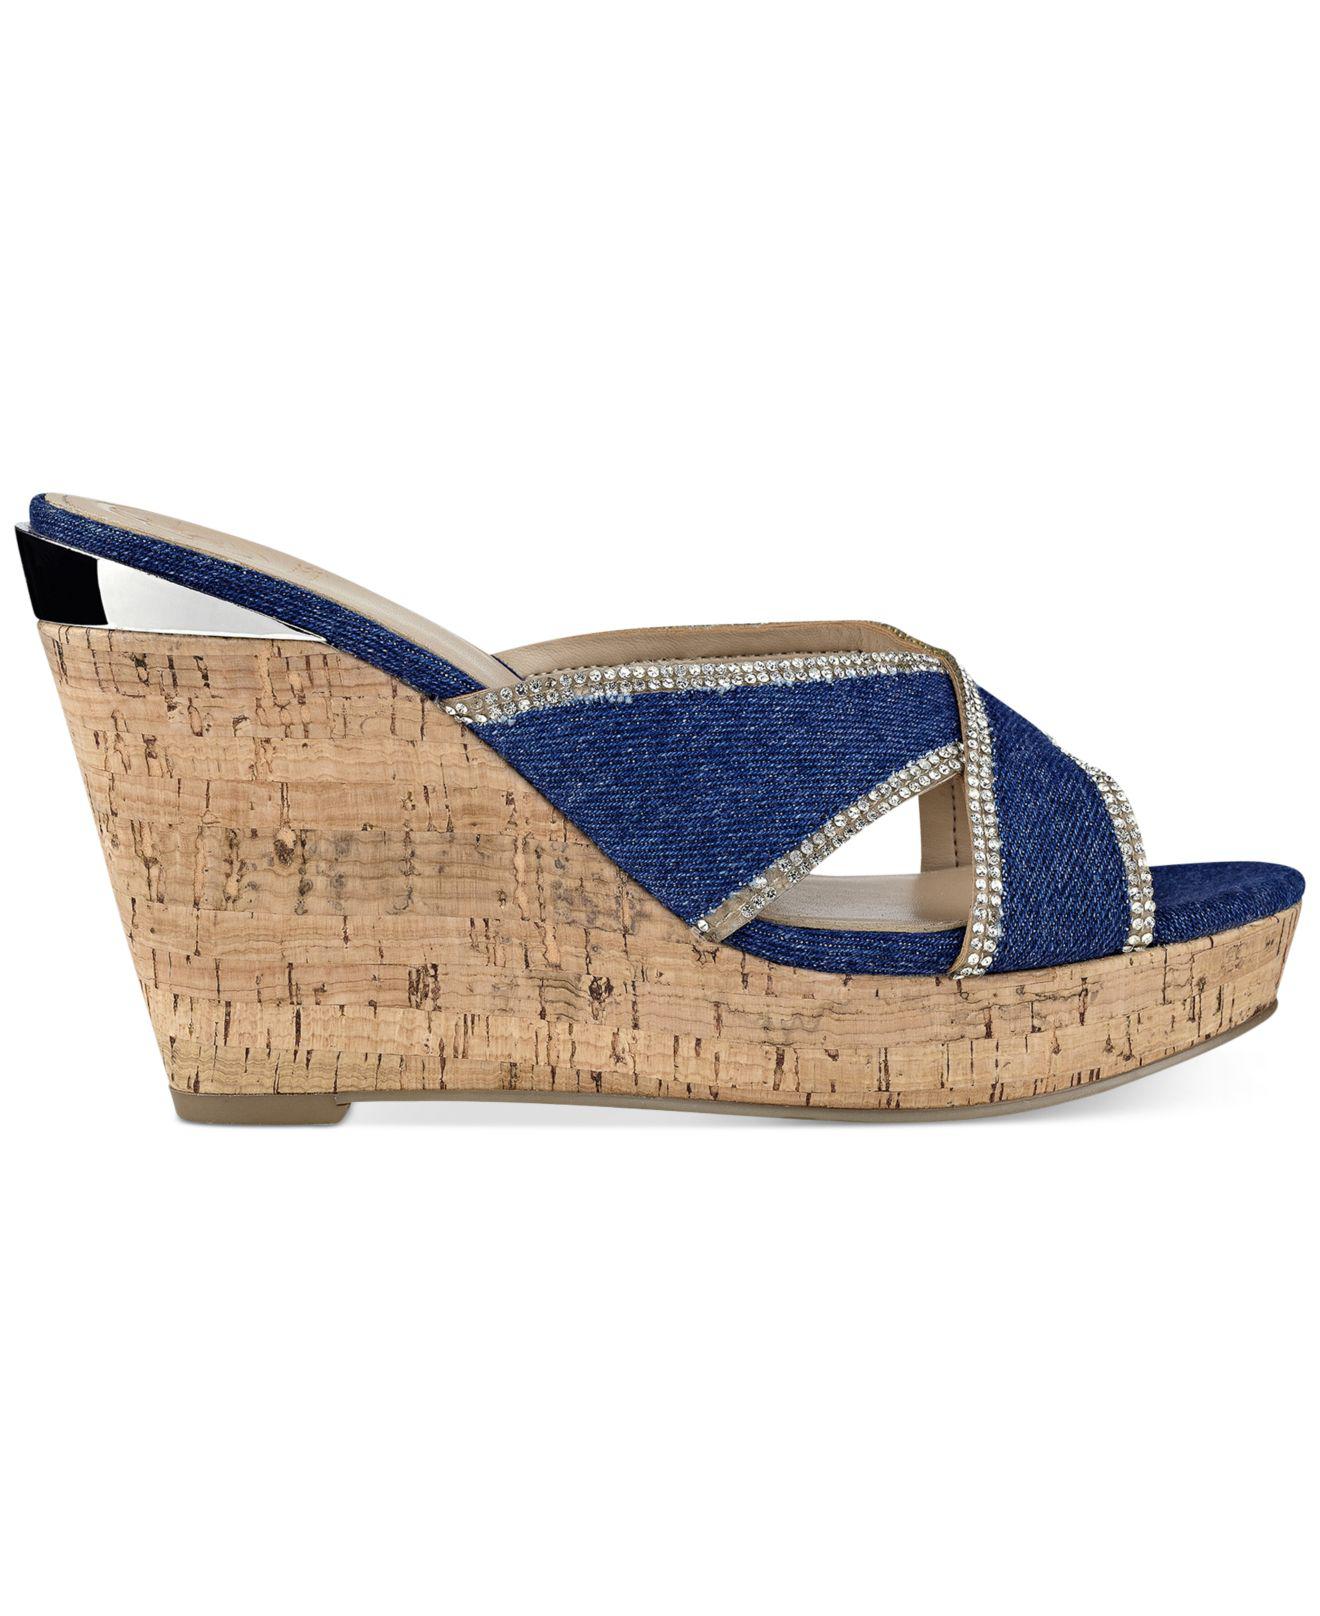 Guess Eleonora Platform Wedge Sandals in Dark Denim (Blue) - Lyst